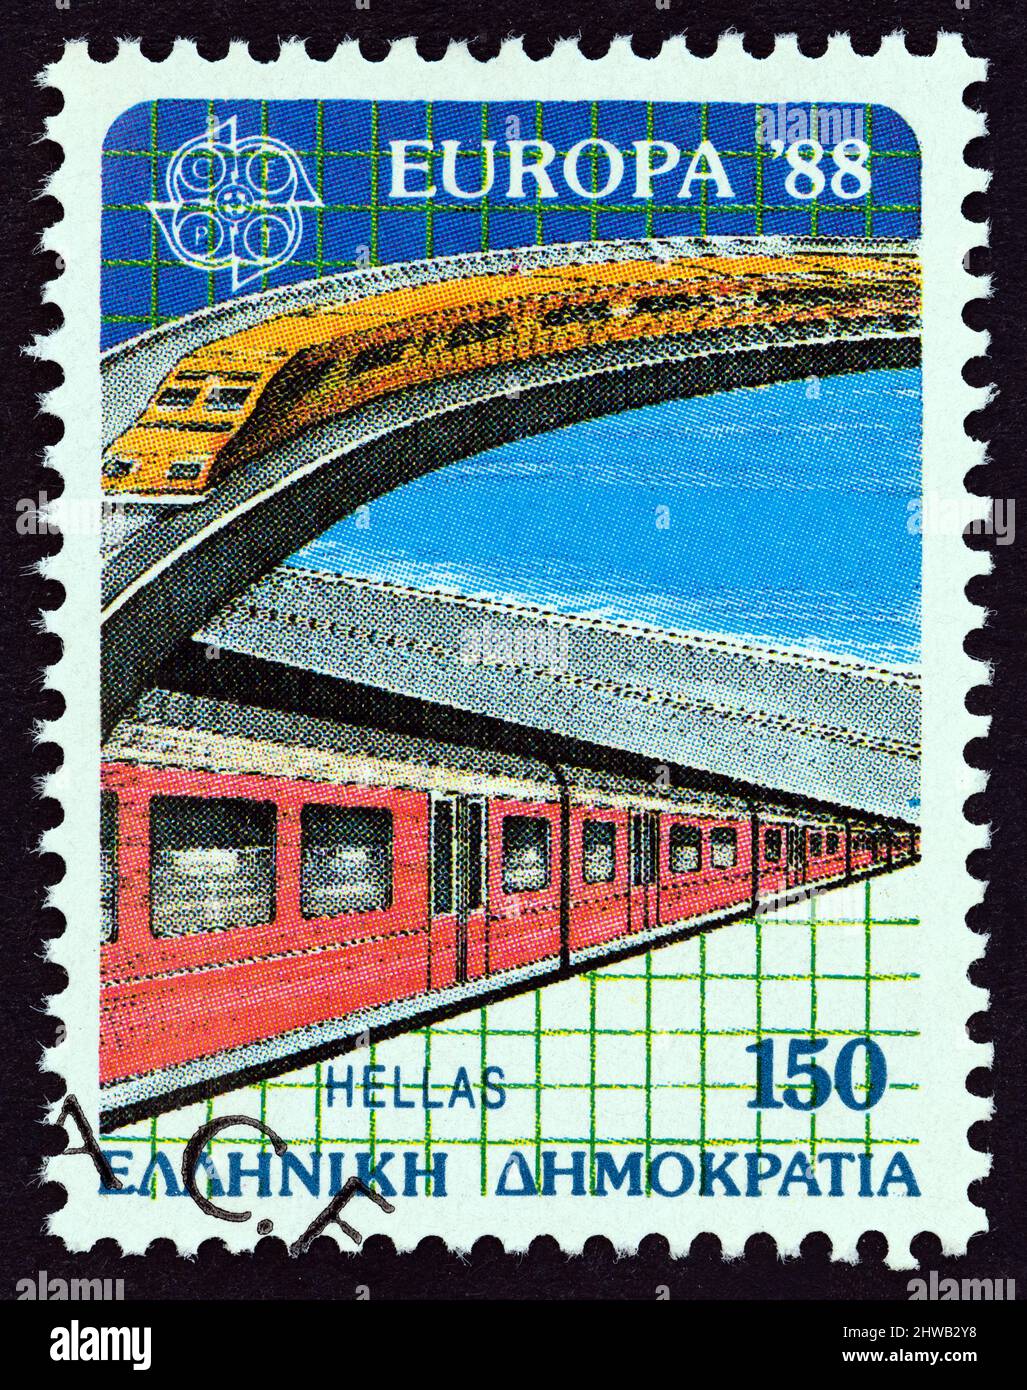 GRÈCE - VERS 1988: Un timbre imprimé en Grèce de l'Europa. Le numéro de Transports et Communications montre les trains express et de banlieue modernes. Banque D'Images